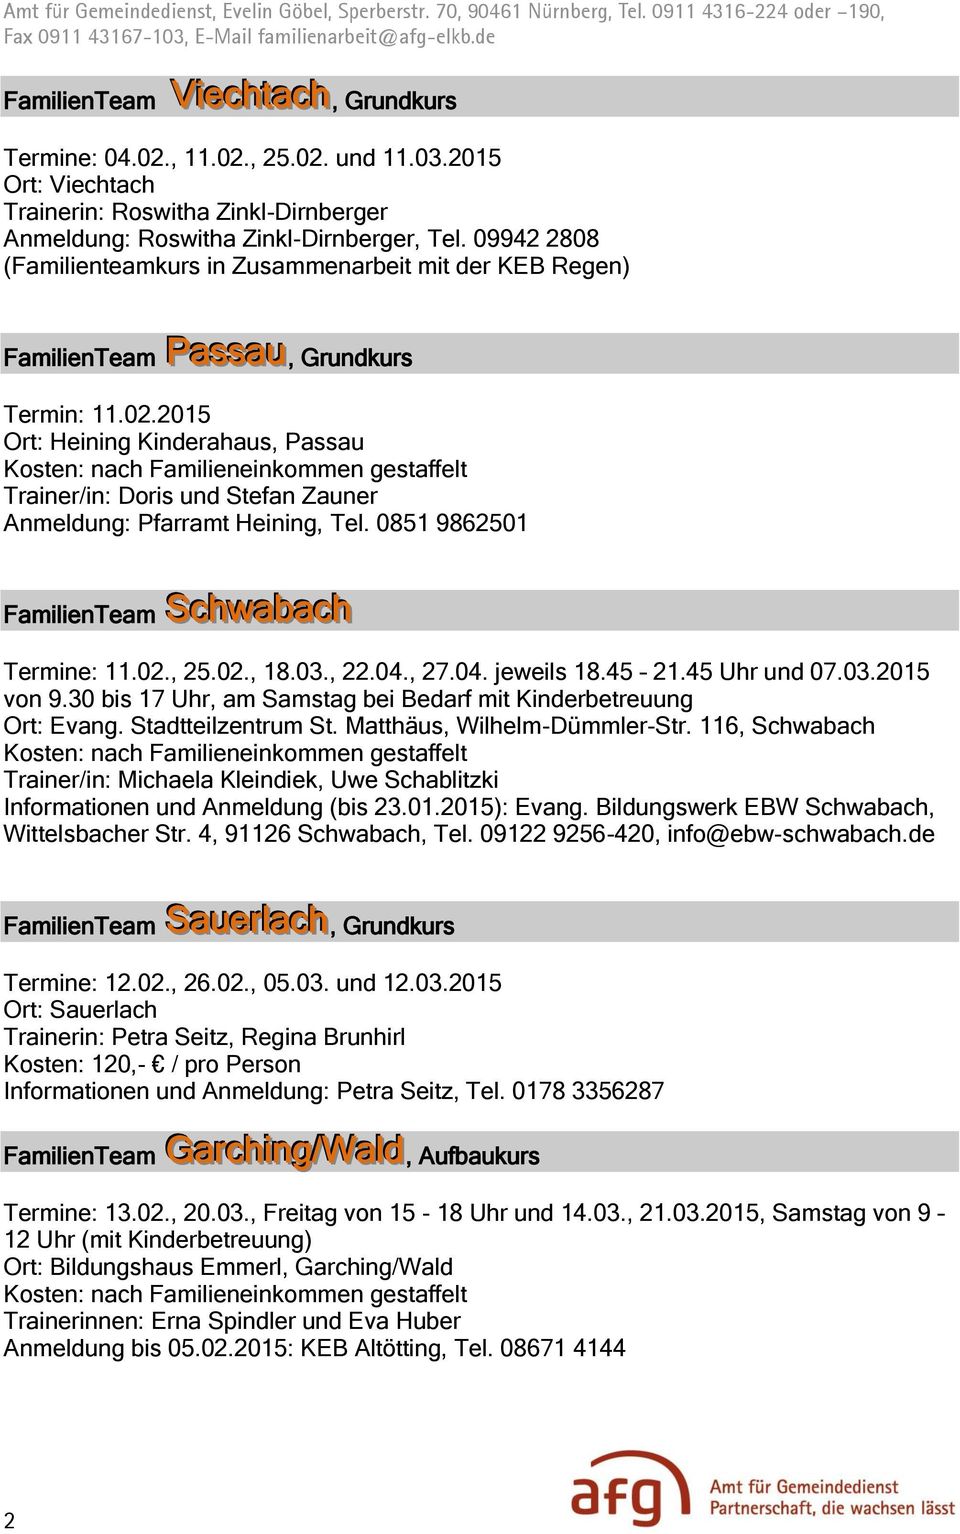 2015 Ort: Heining Kinderahaus, Passau Trainer/in: Doris und Stefan Zauner Anmeldung: Pfarramt Heining, Tel. 0851 9862501 FamilienTeam Schwabach Termine: 11.02., 25.02., 18.03., 22.04., 27.04. jeweils 18.